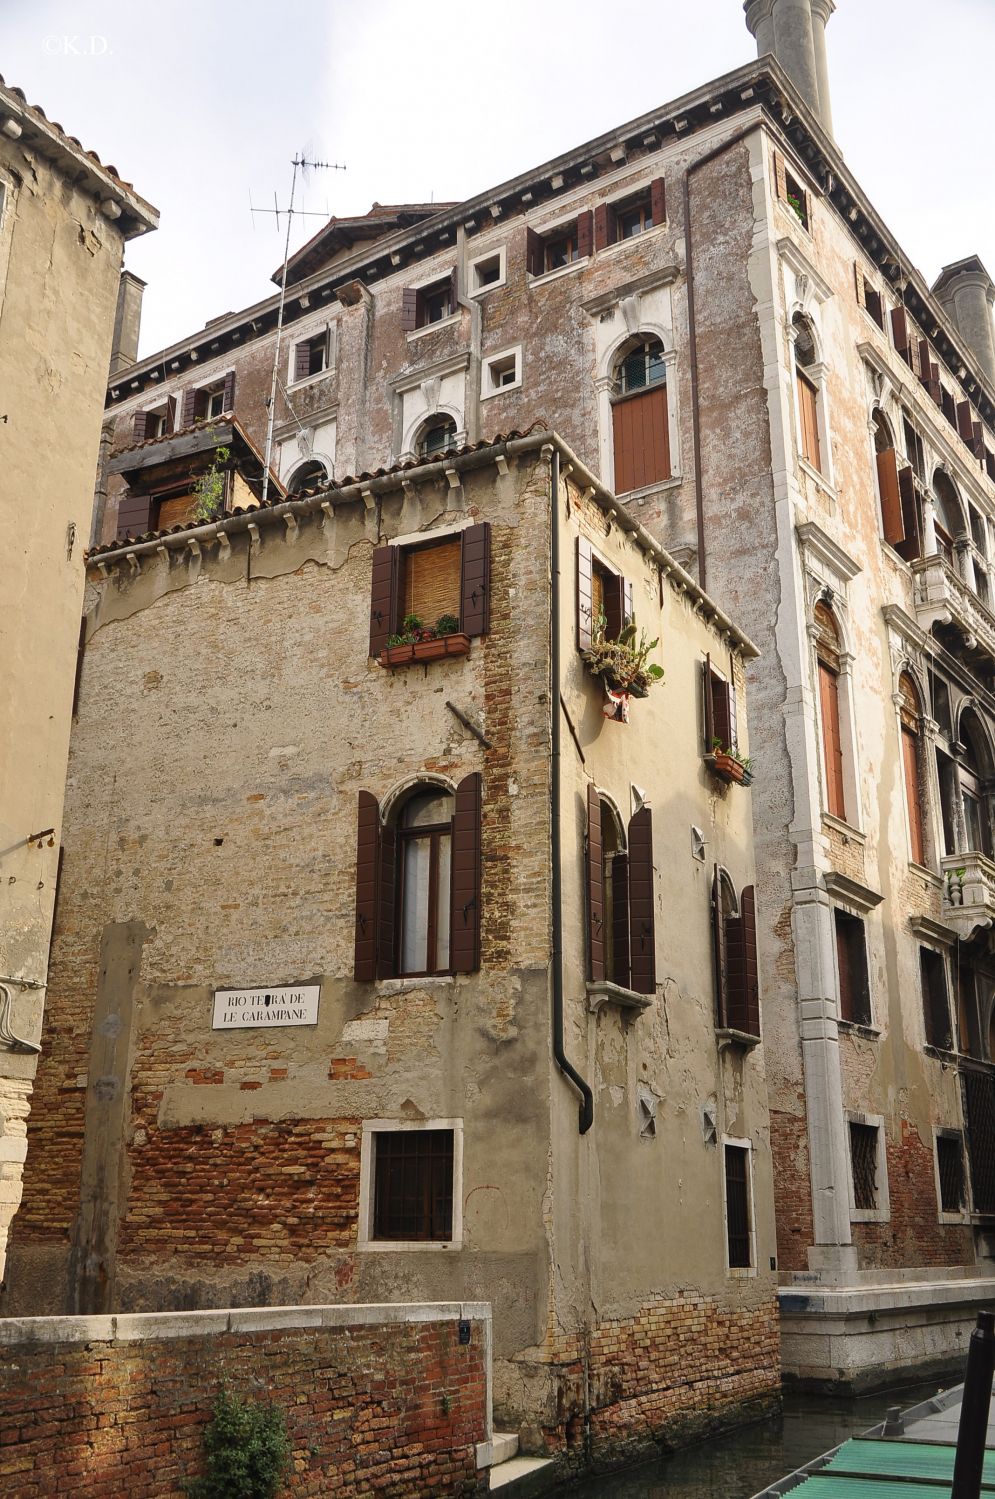 Carampane - ehemaliges Rotlichtviertel Venedigs